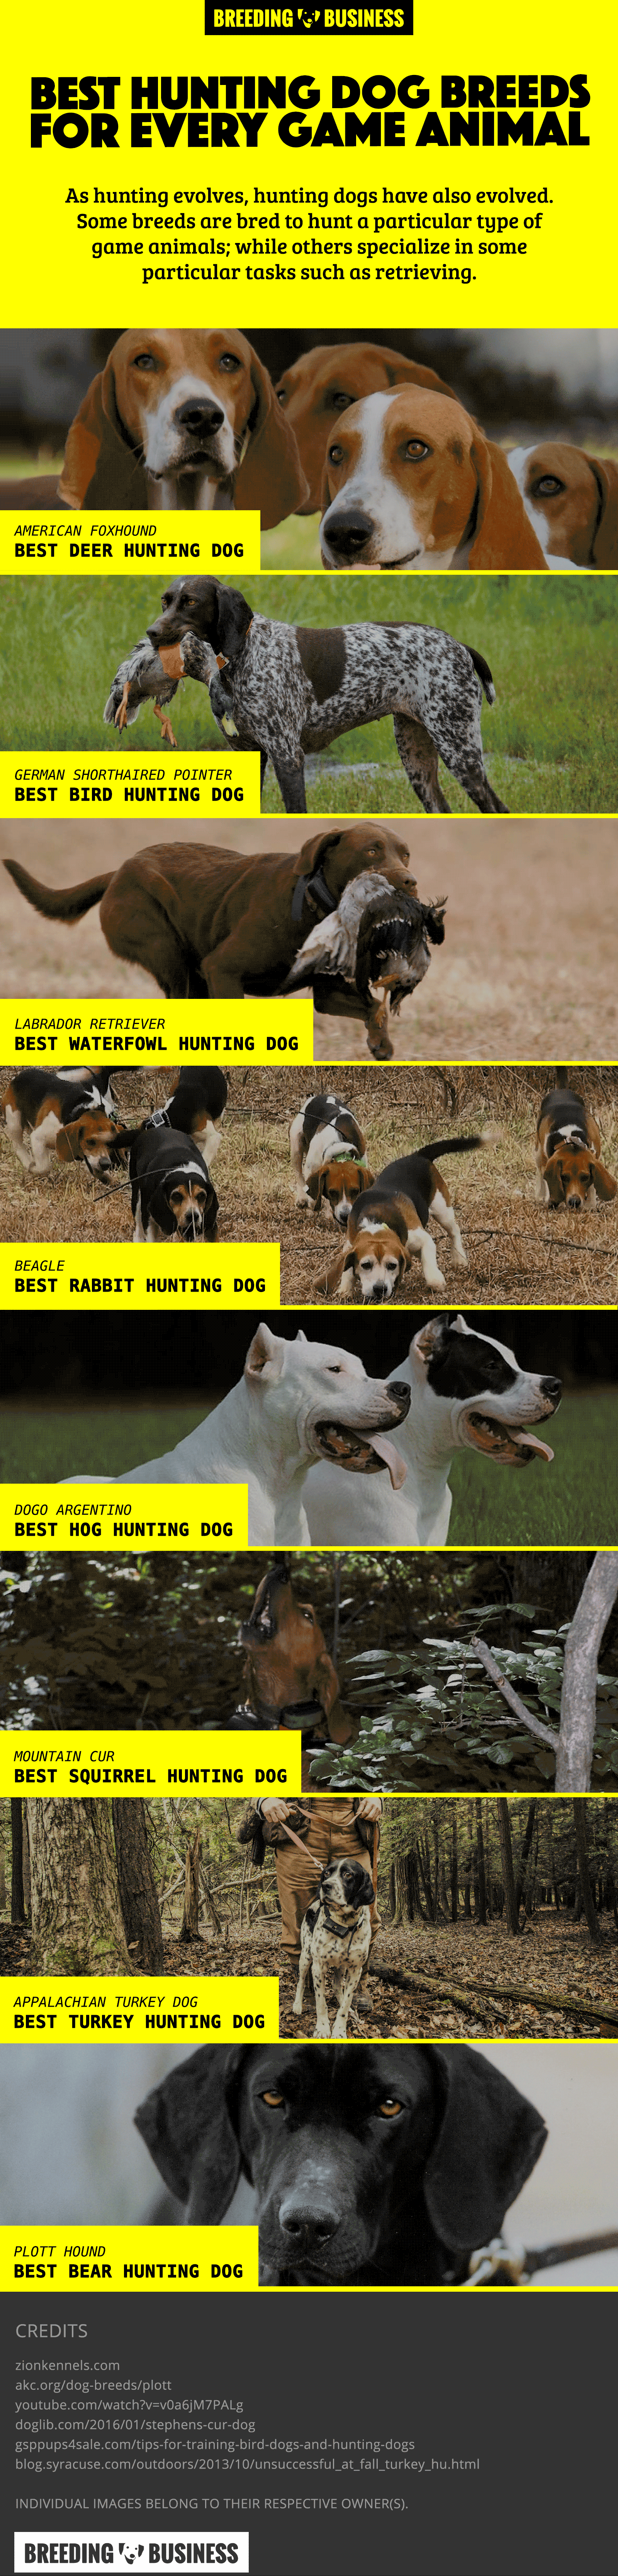 deer hunting dog breeds